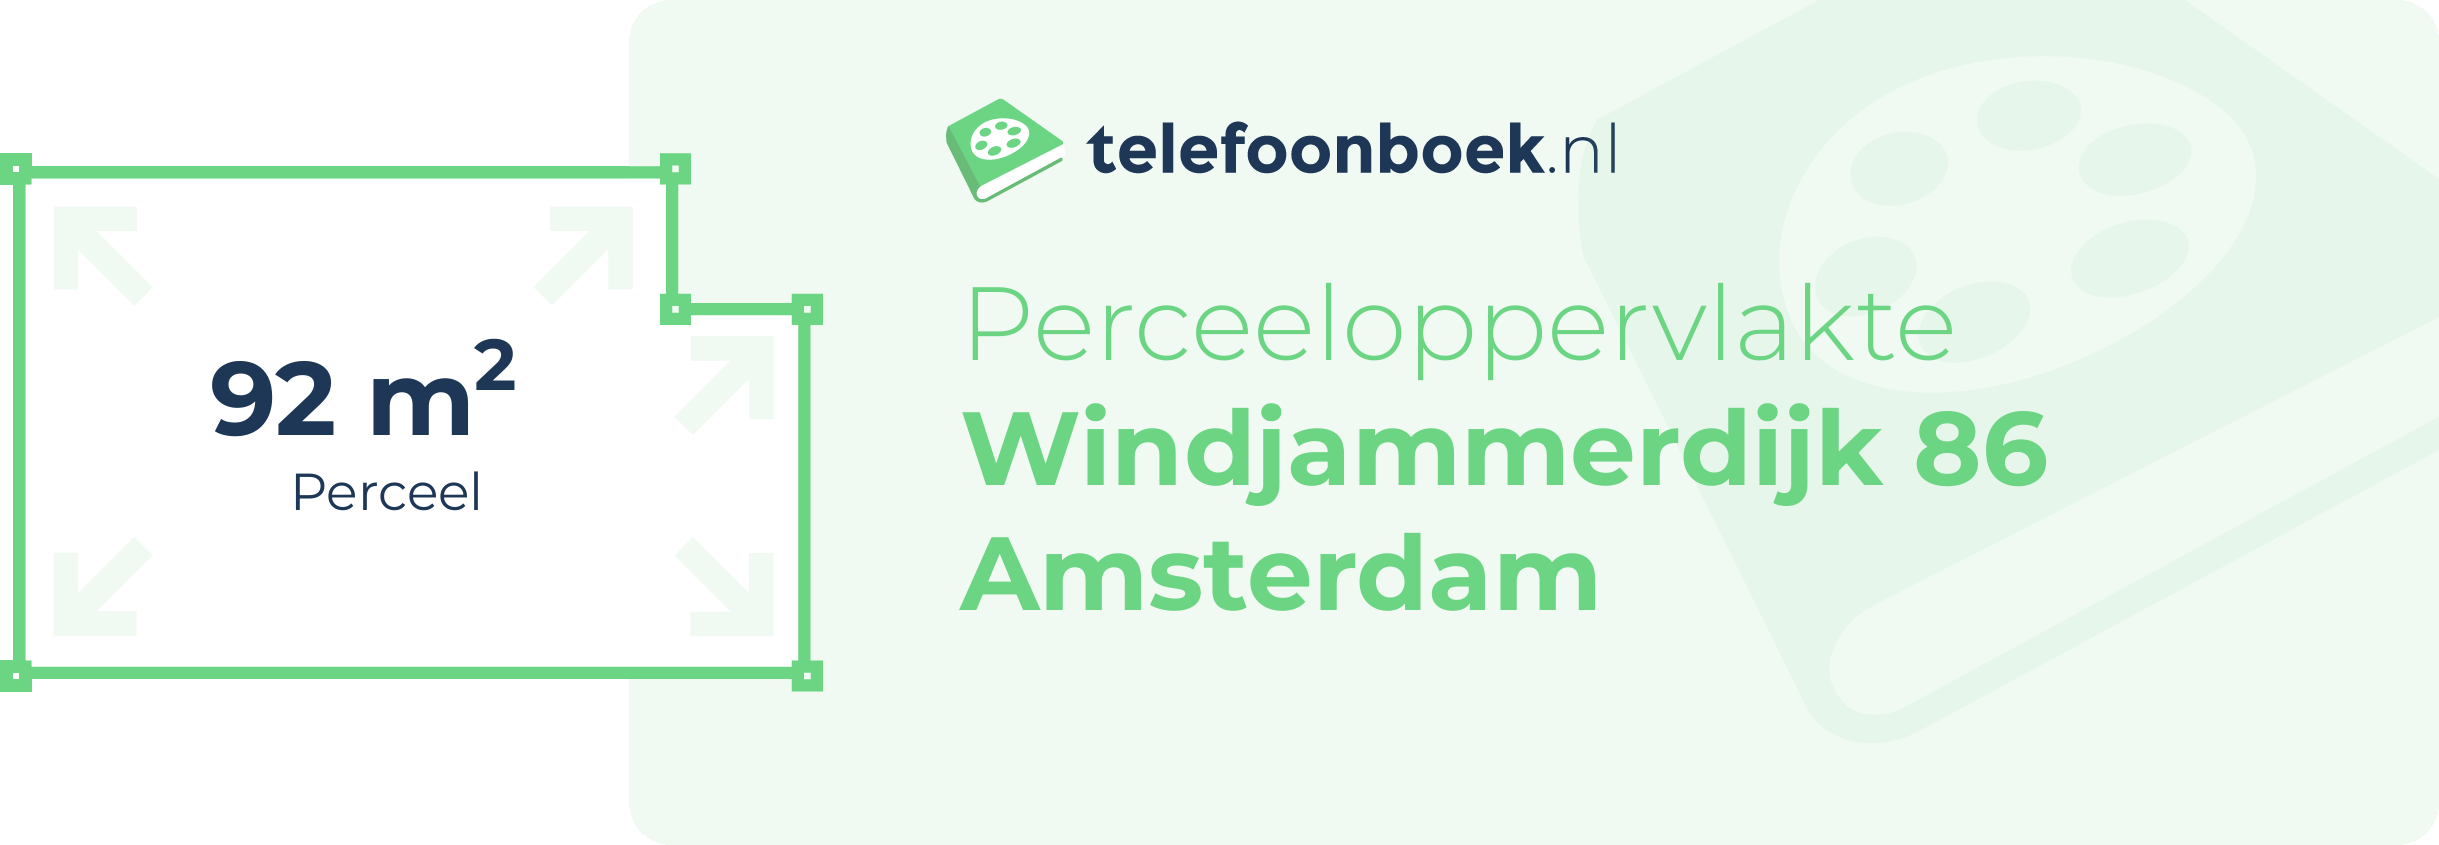 Perceeloppervlakte Windjammerdijk 86 Amsterdam